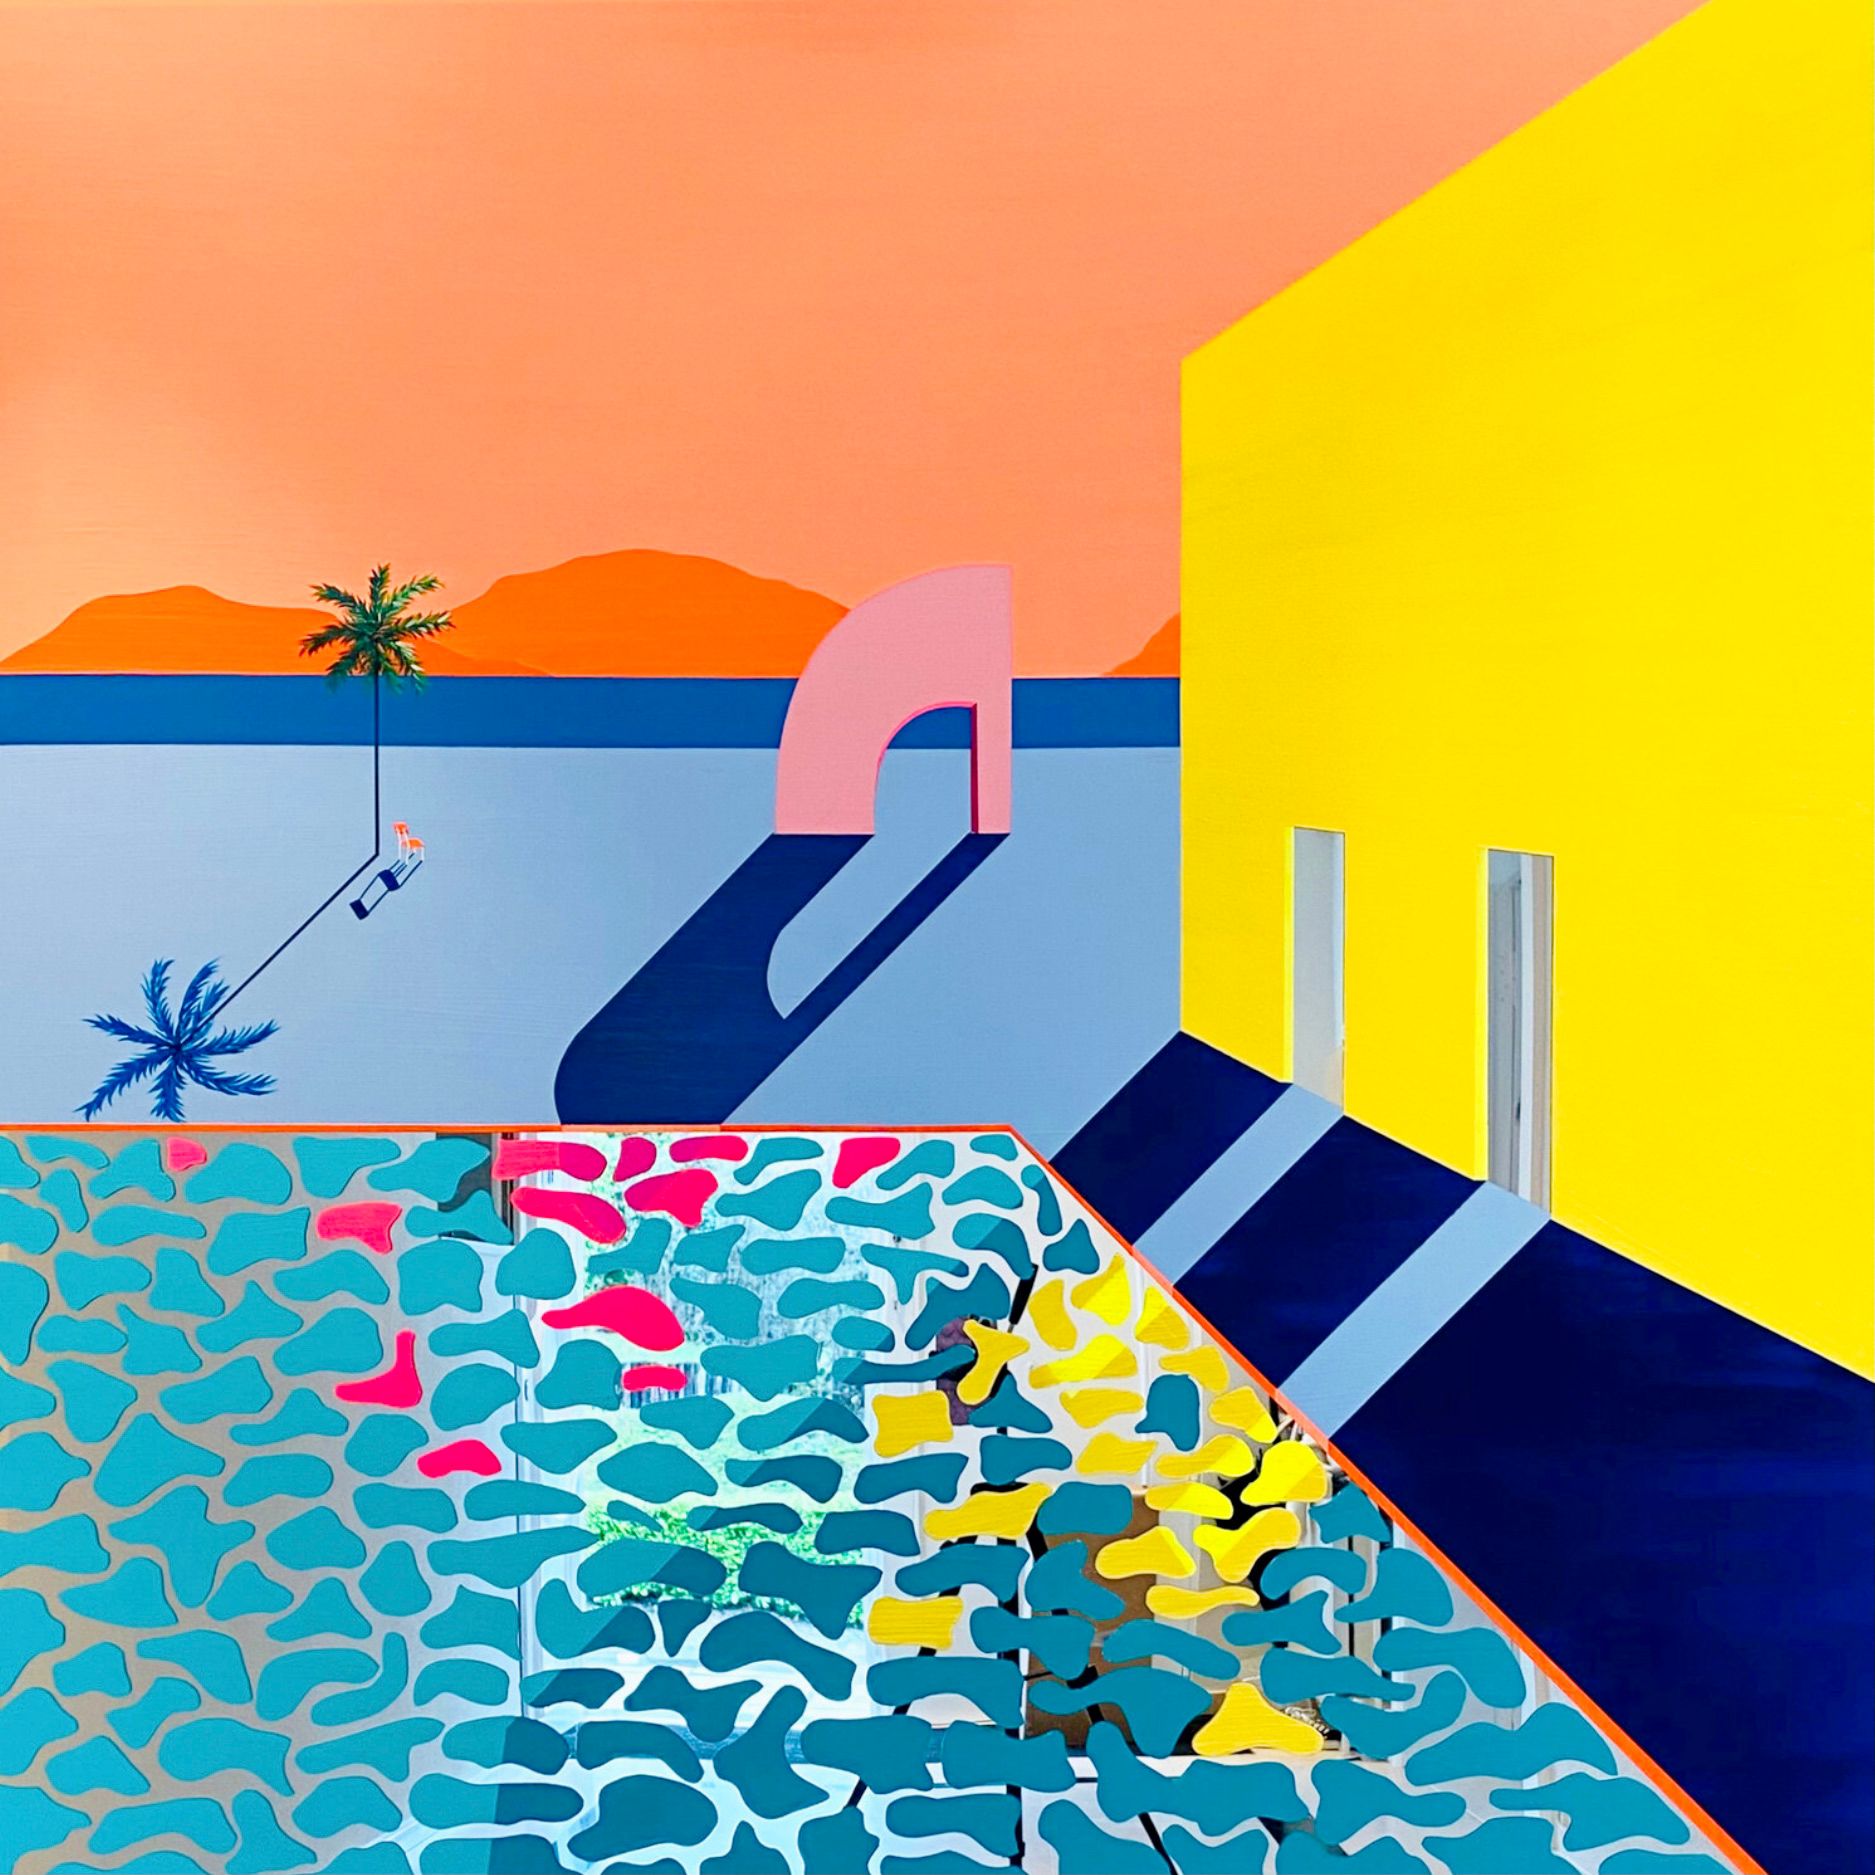 Isabelle Derecque,"Painting for the tacos delivery boy"  Farbenfrohes Gemälde, an einem geheimnisvoll farbigen Swimming Pool Orte auf Plexispiegel in Pop-Up Stil mit fröhlichen und energischen Farben gemalt. Visualisiert durch Geometrie, Perspektiven, Kontraste und Spiegelungen.